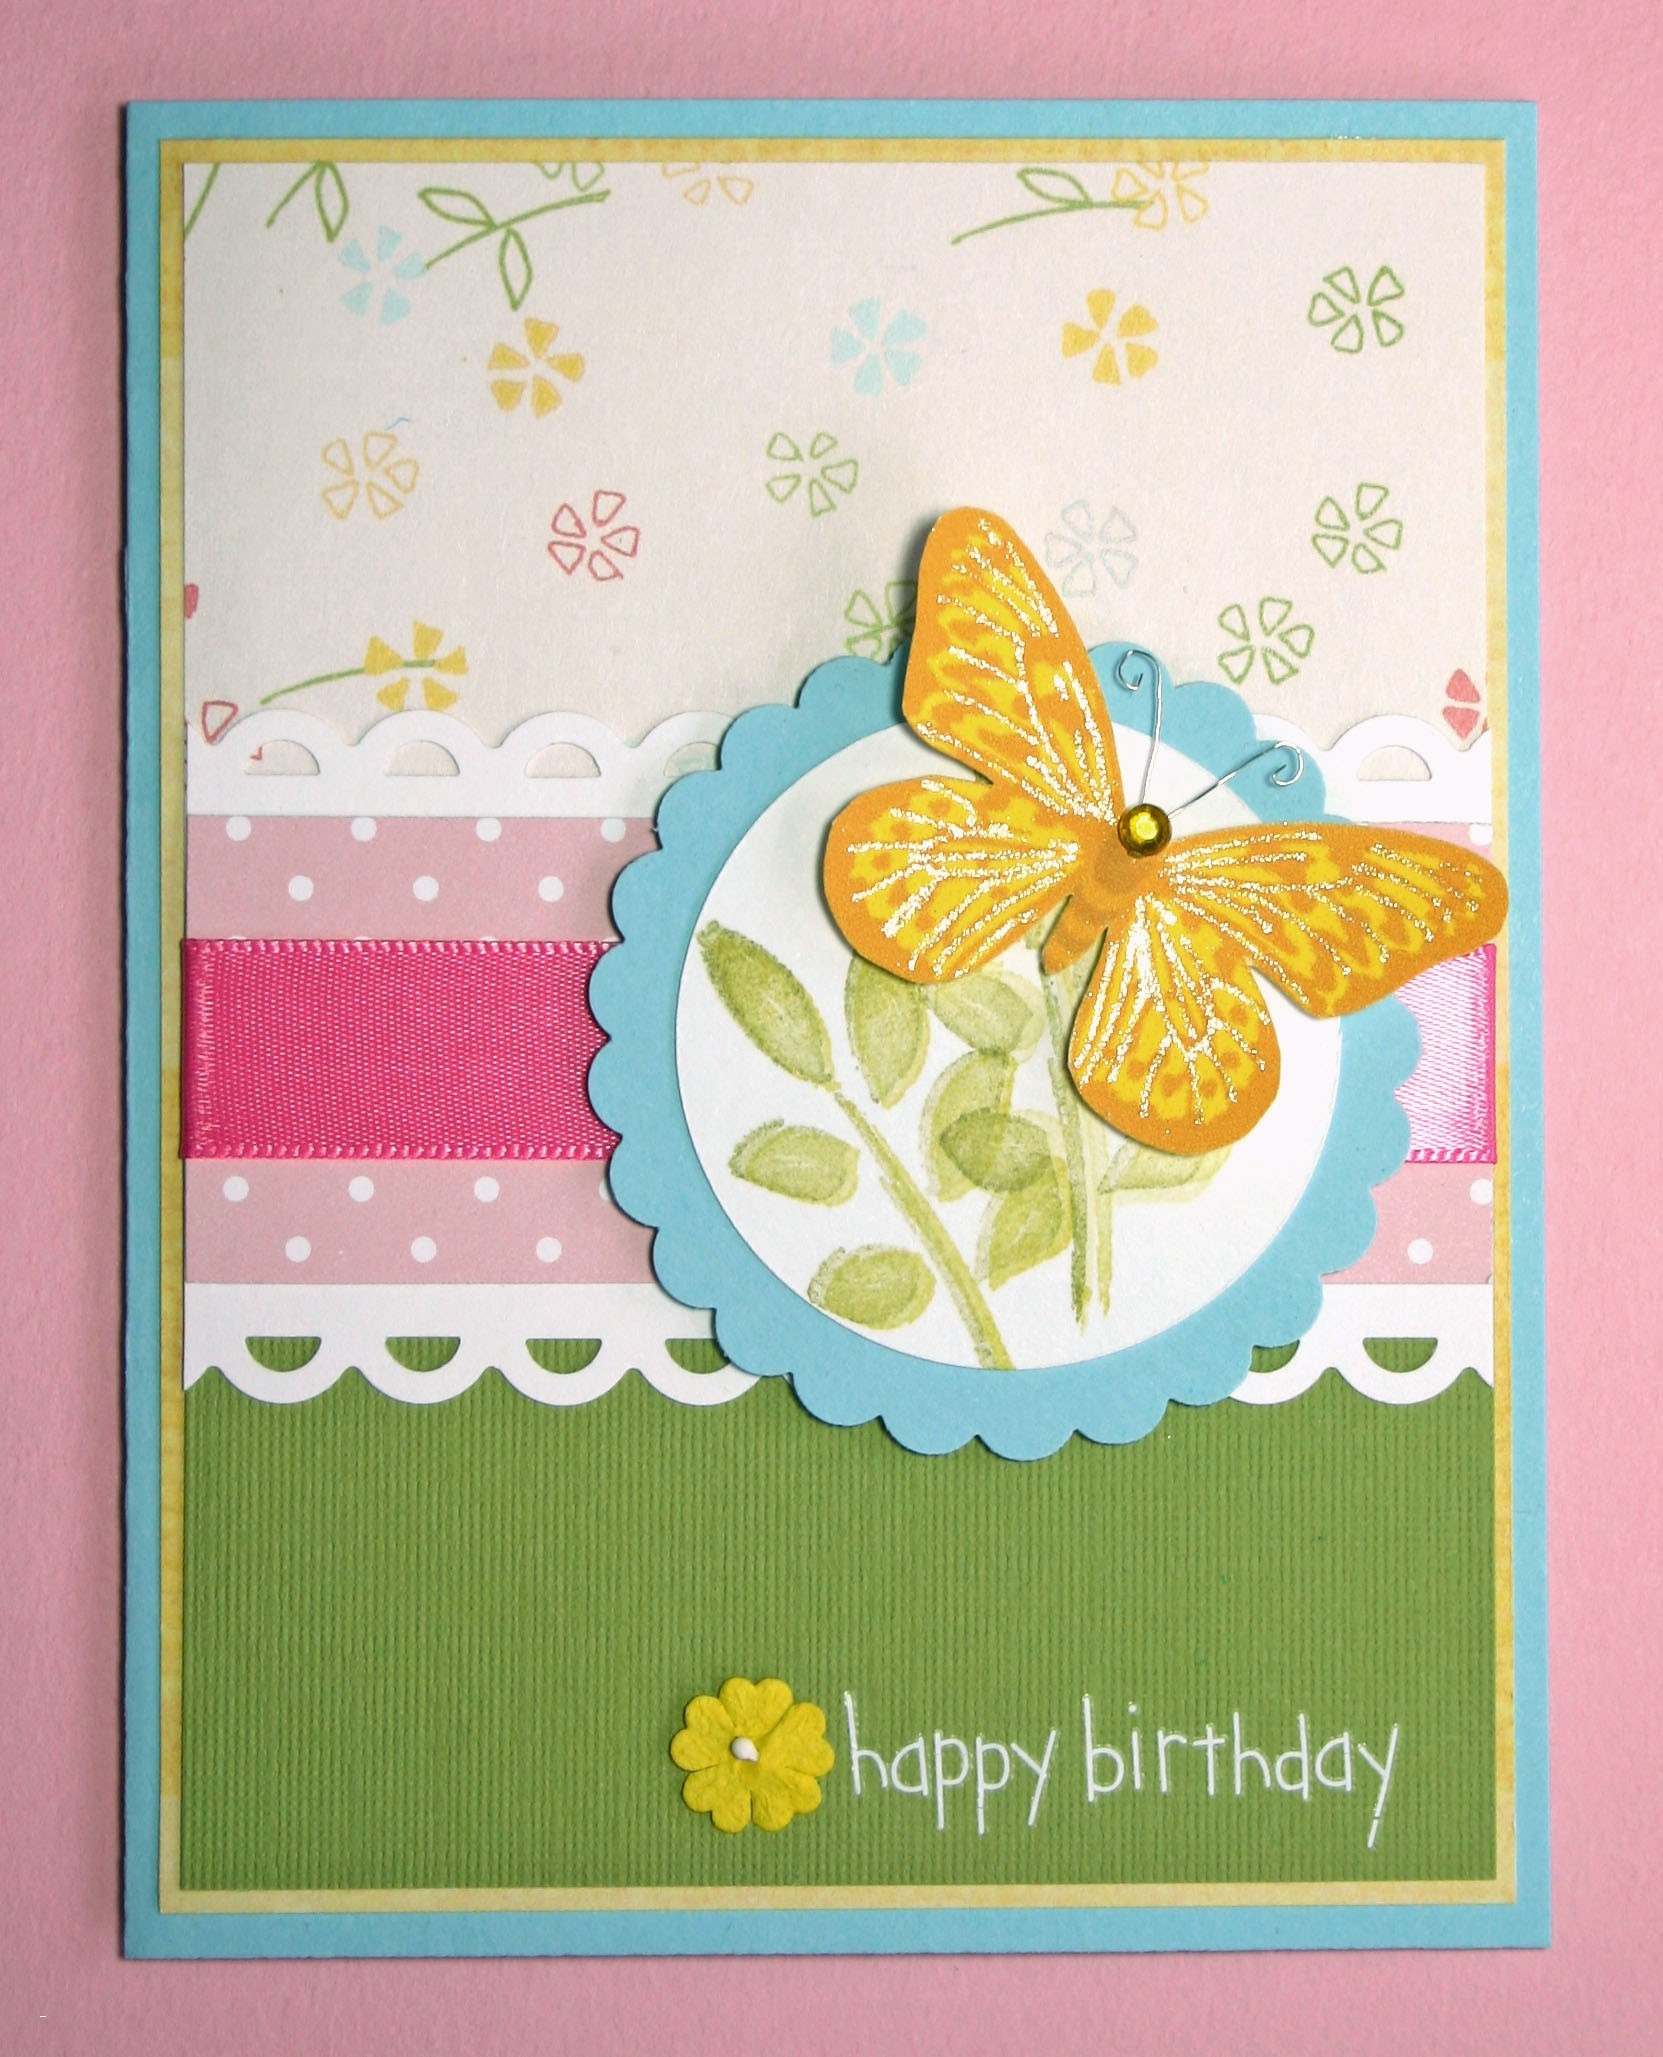 Handmade Birthday Card Ideas For Husband How To Make Handmade Birthday Cards For Husband Cardfssn